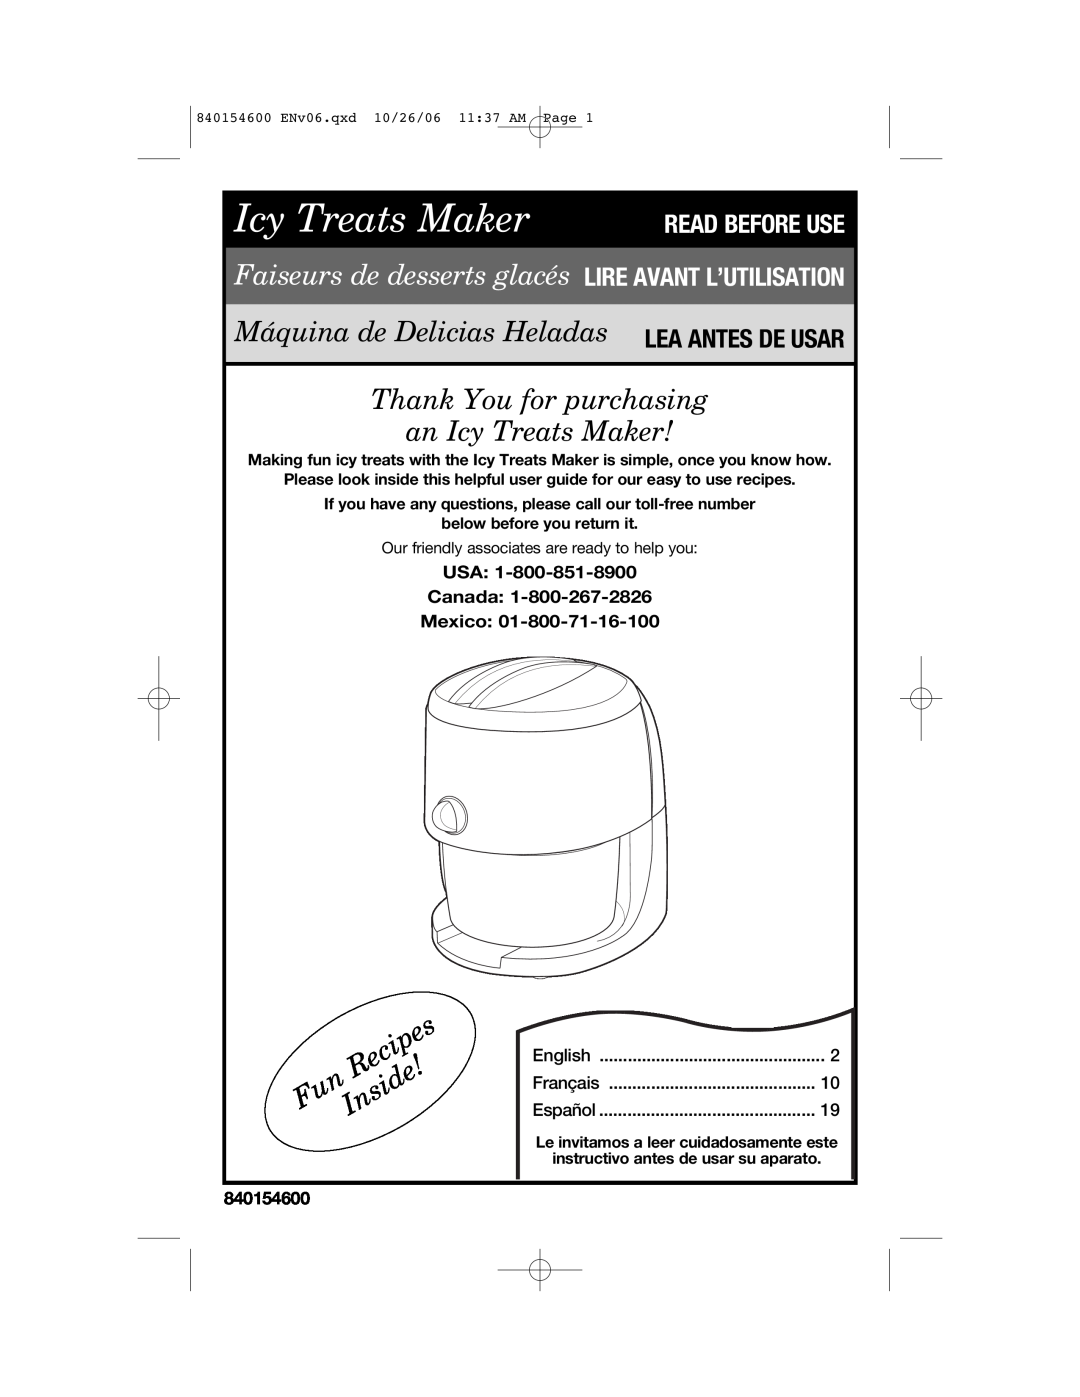 Hamilton Beach 840154600 manual USA Canada Mexico, Icy Treats Maker READ BEFORE USE, Recipes, Inside 